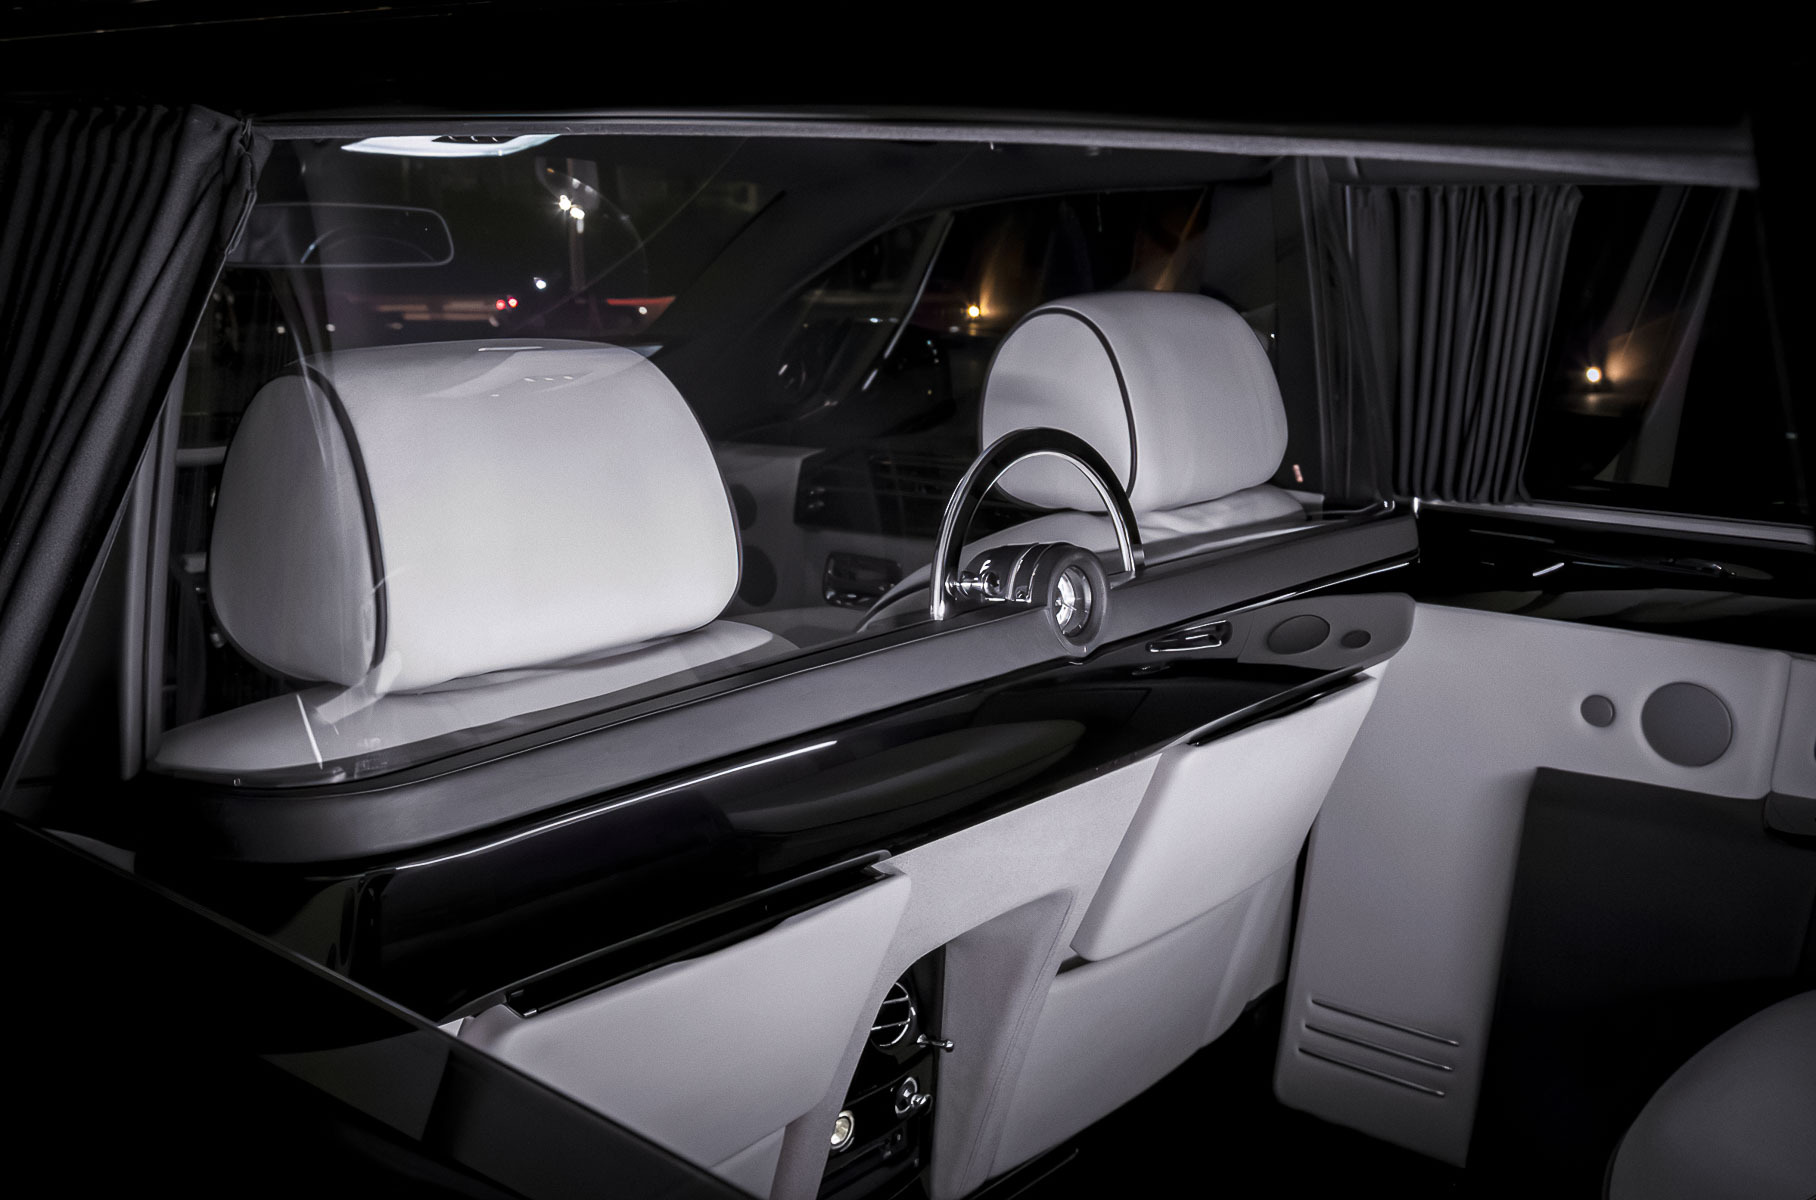 Необычную версию Rolls-Royce Phantom продают в Москве за 19 миллионов рублей Новости